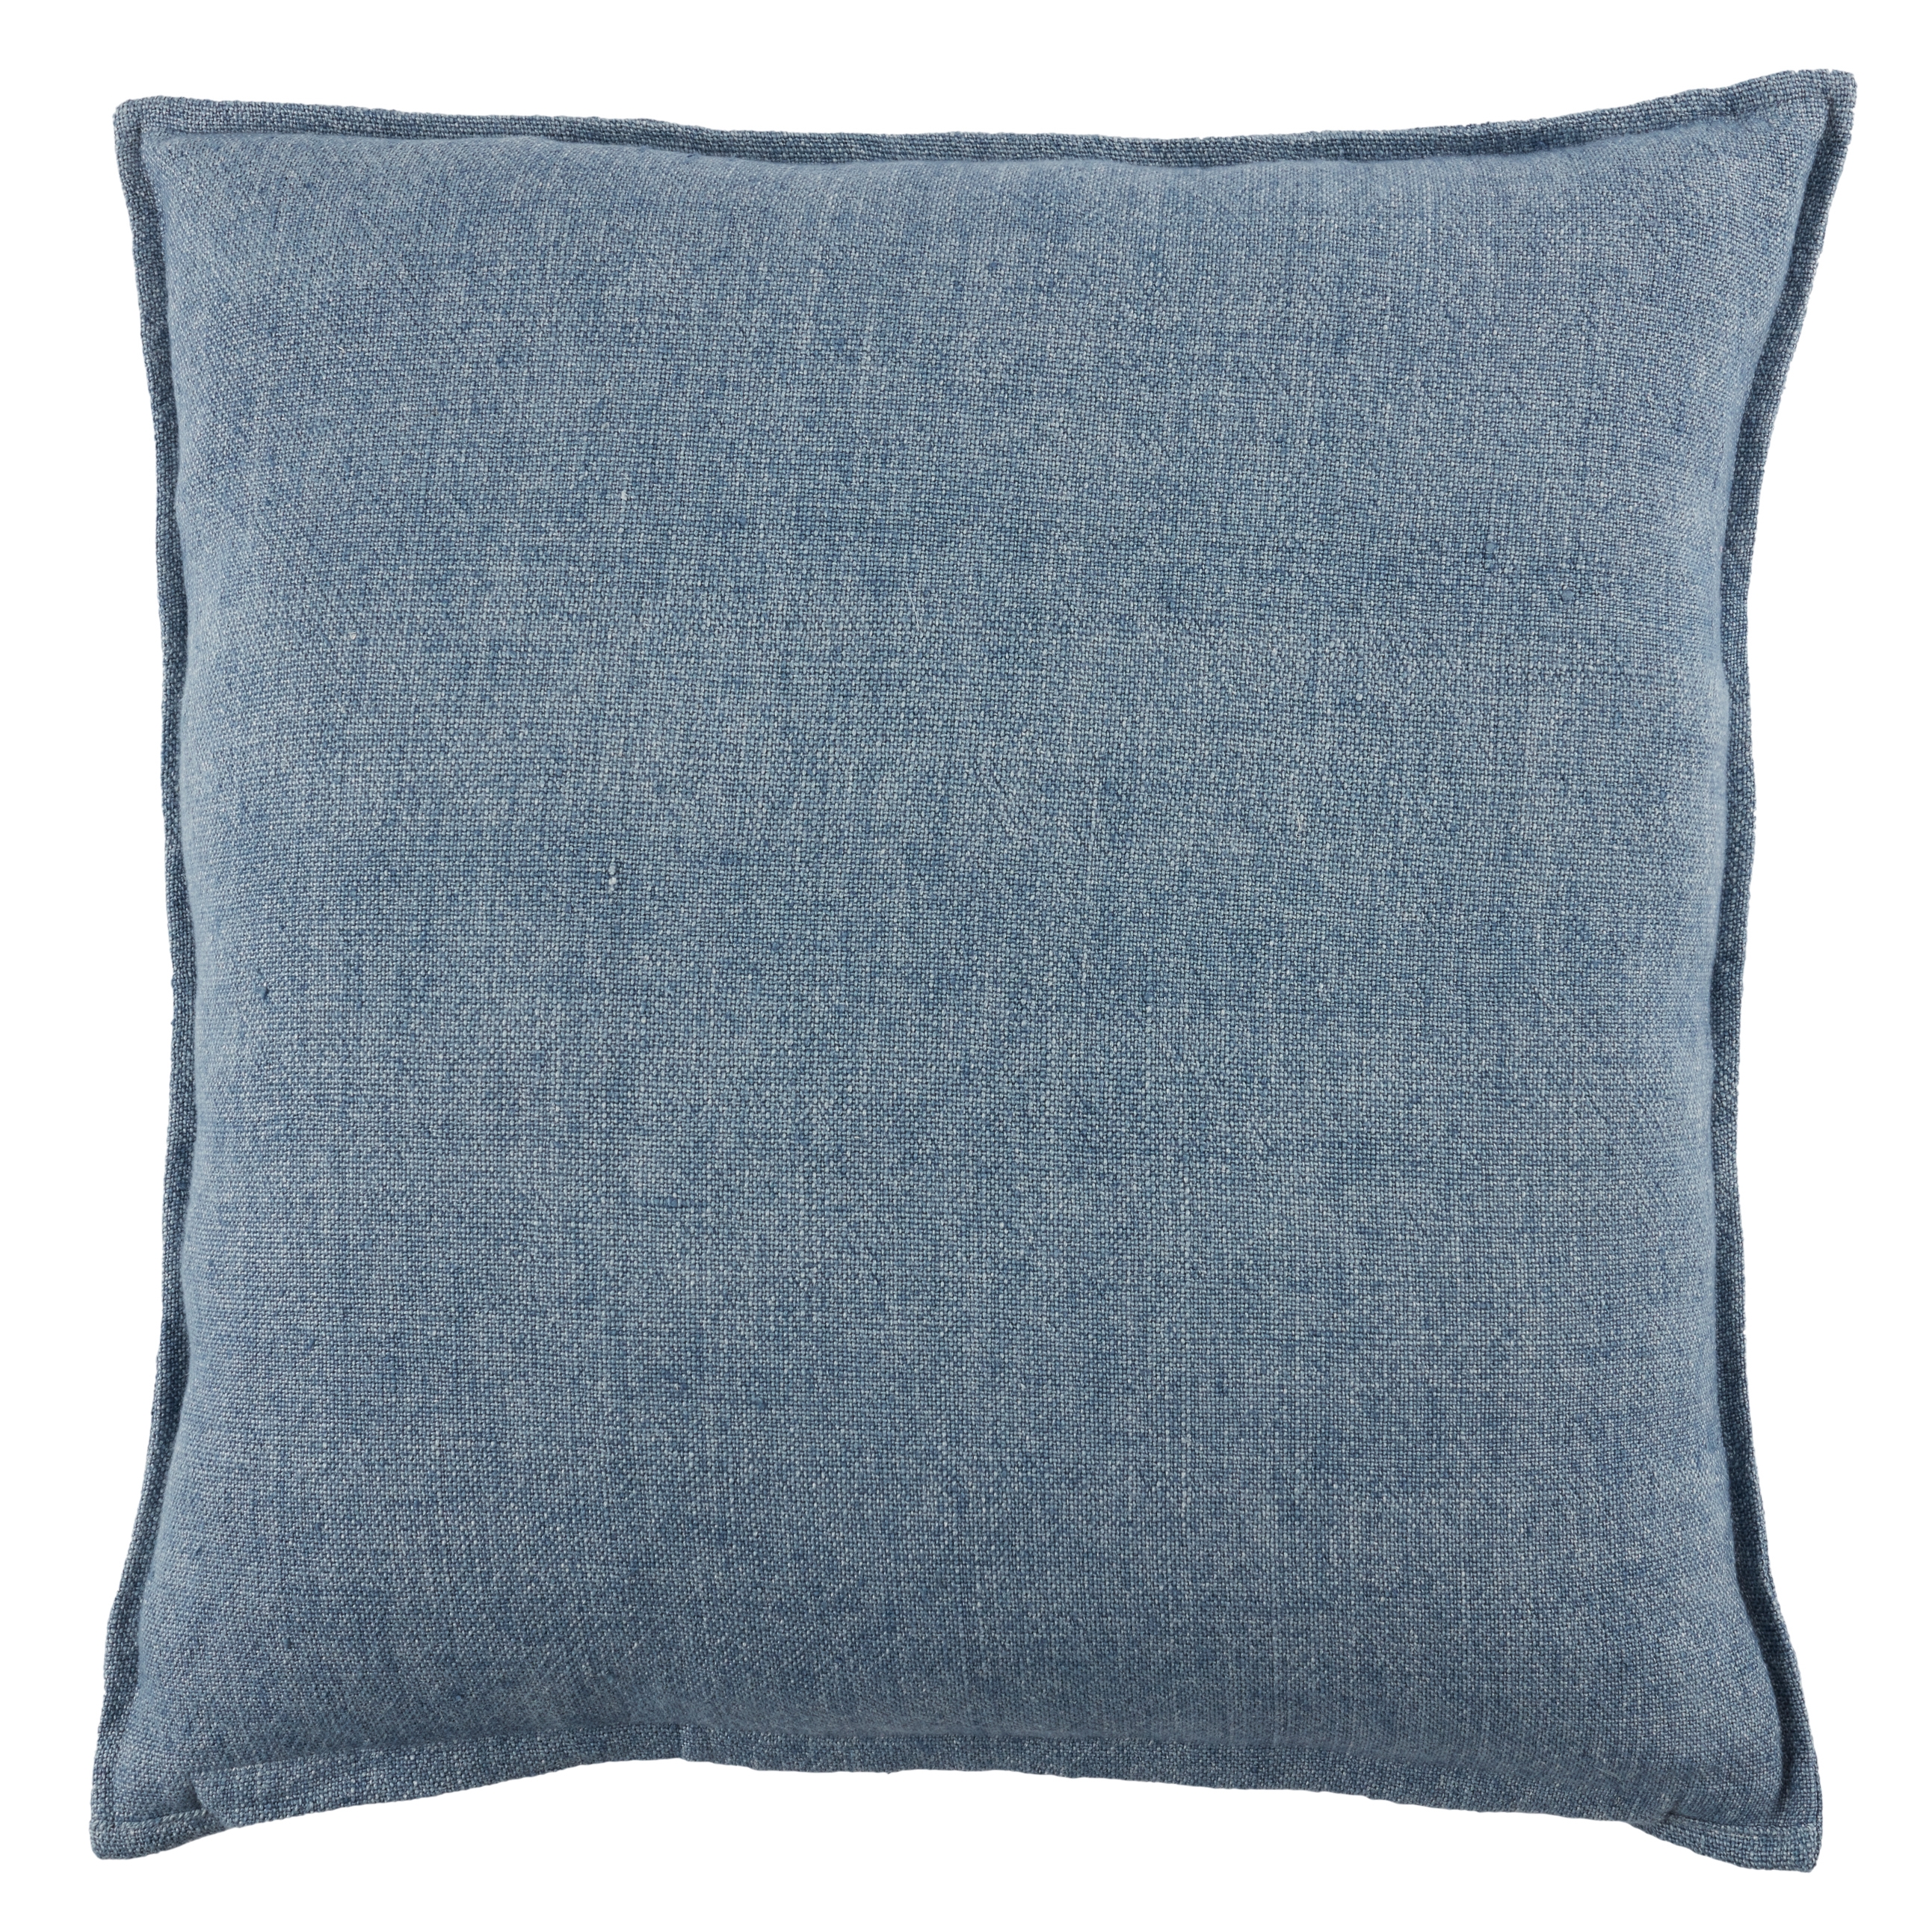 Burbank Throw Pillow, Blue, 20" x 20" - Image 1